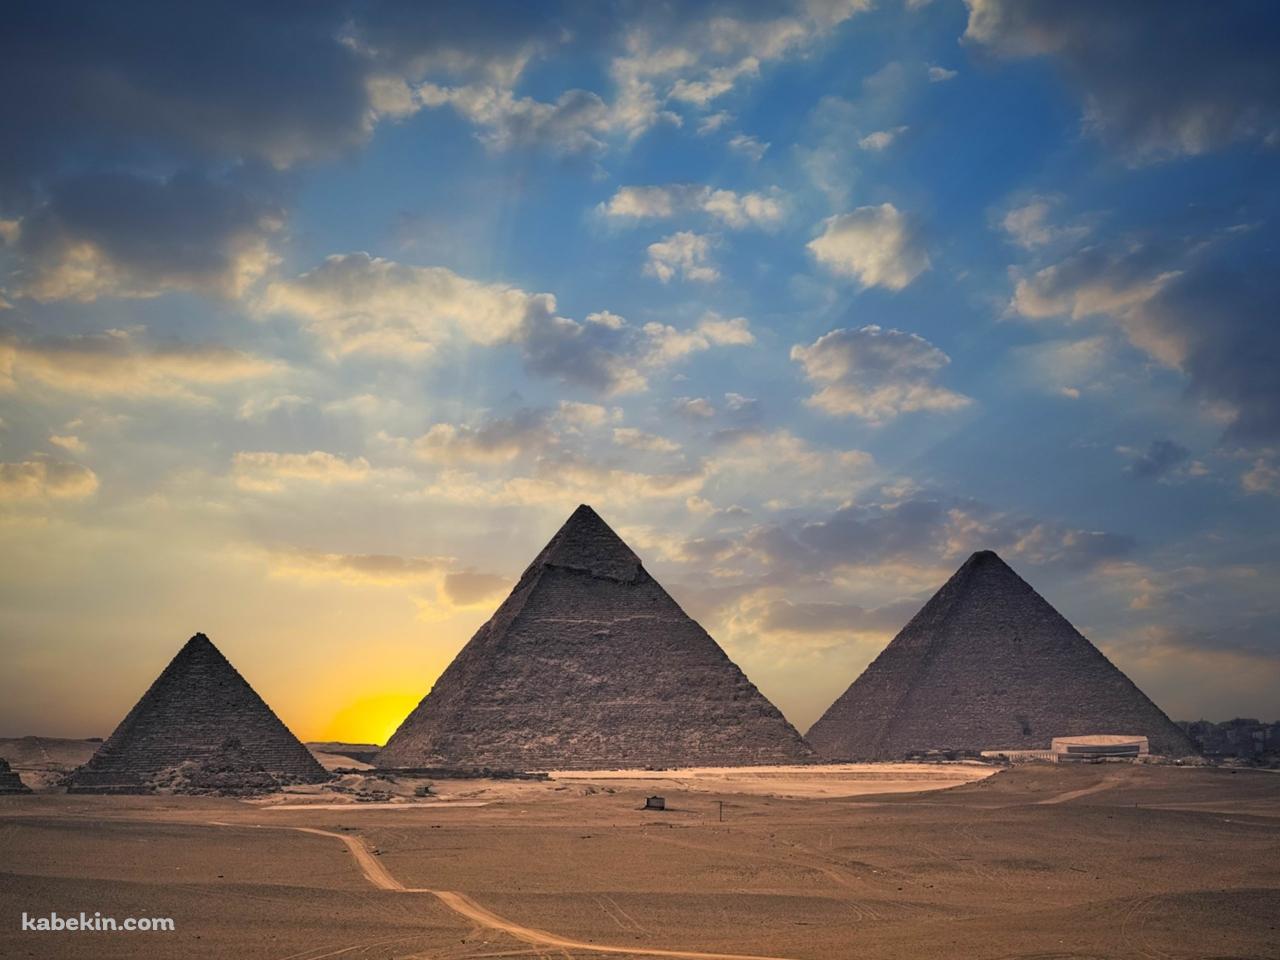 エジプトの並んだピラミッドの壁紙(1280px x 960px) 高画質 PC・デスクトップ用